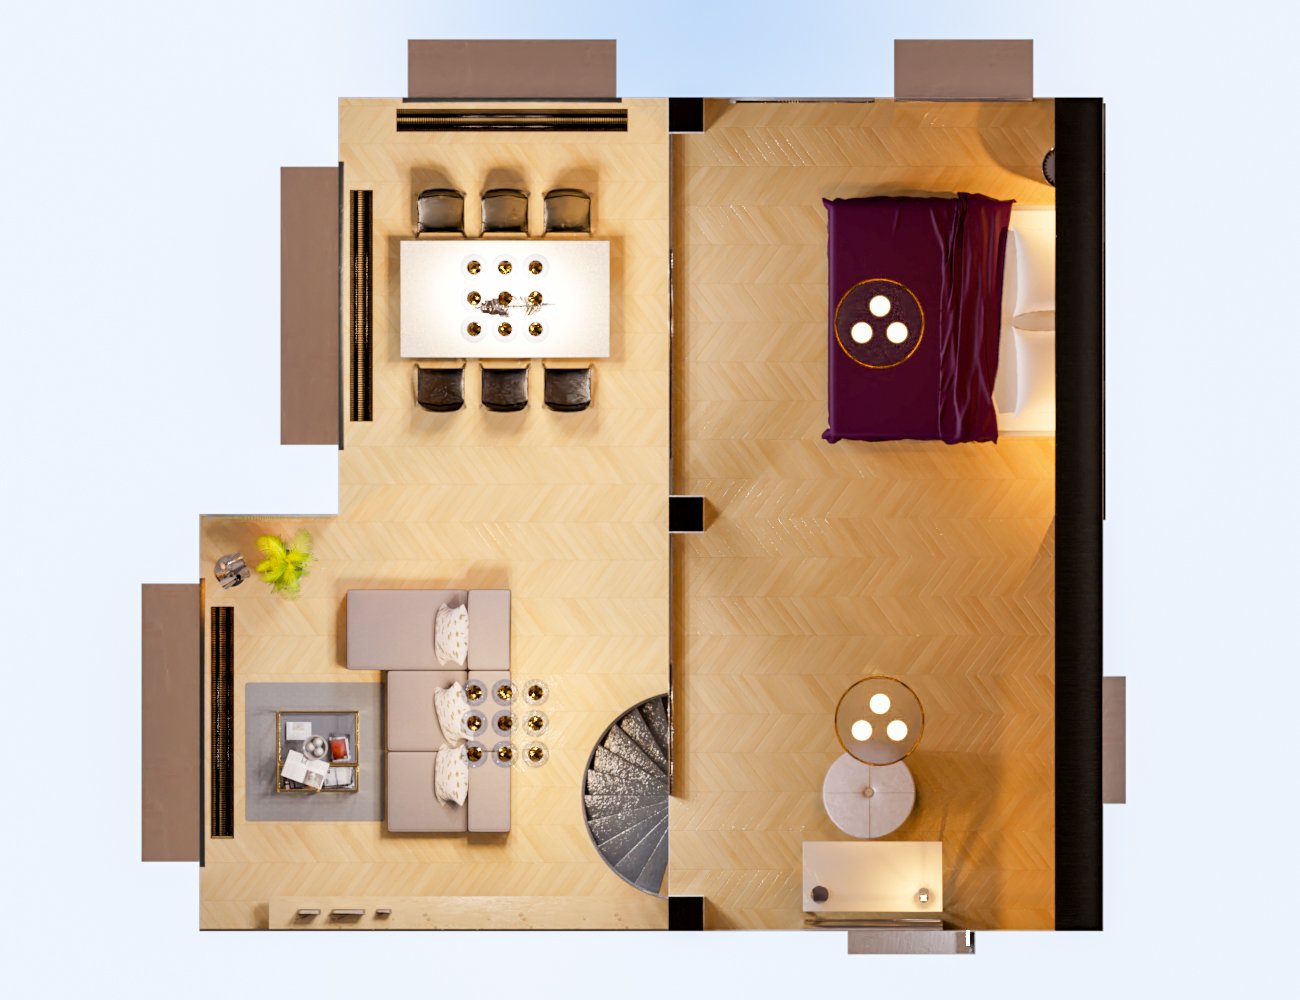 M8 Luxury Loft in Manhattan by: Modu8, 3D Models by Daz 3D